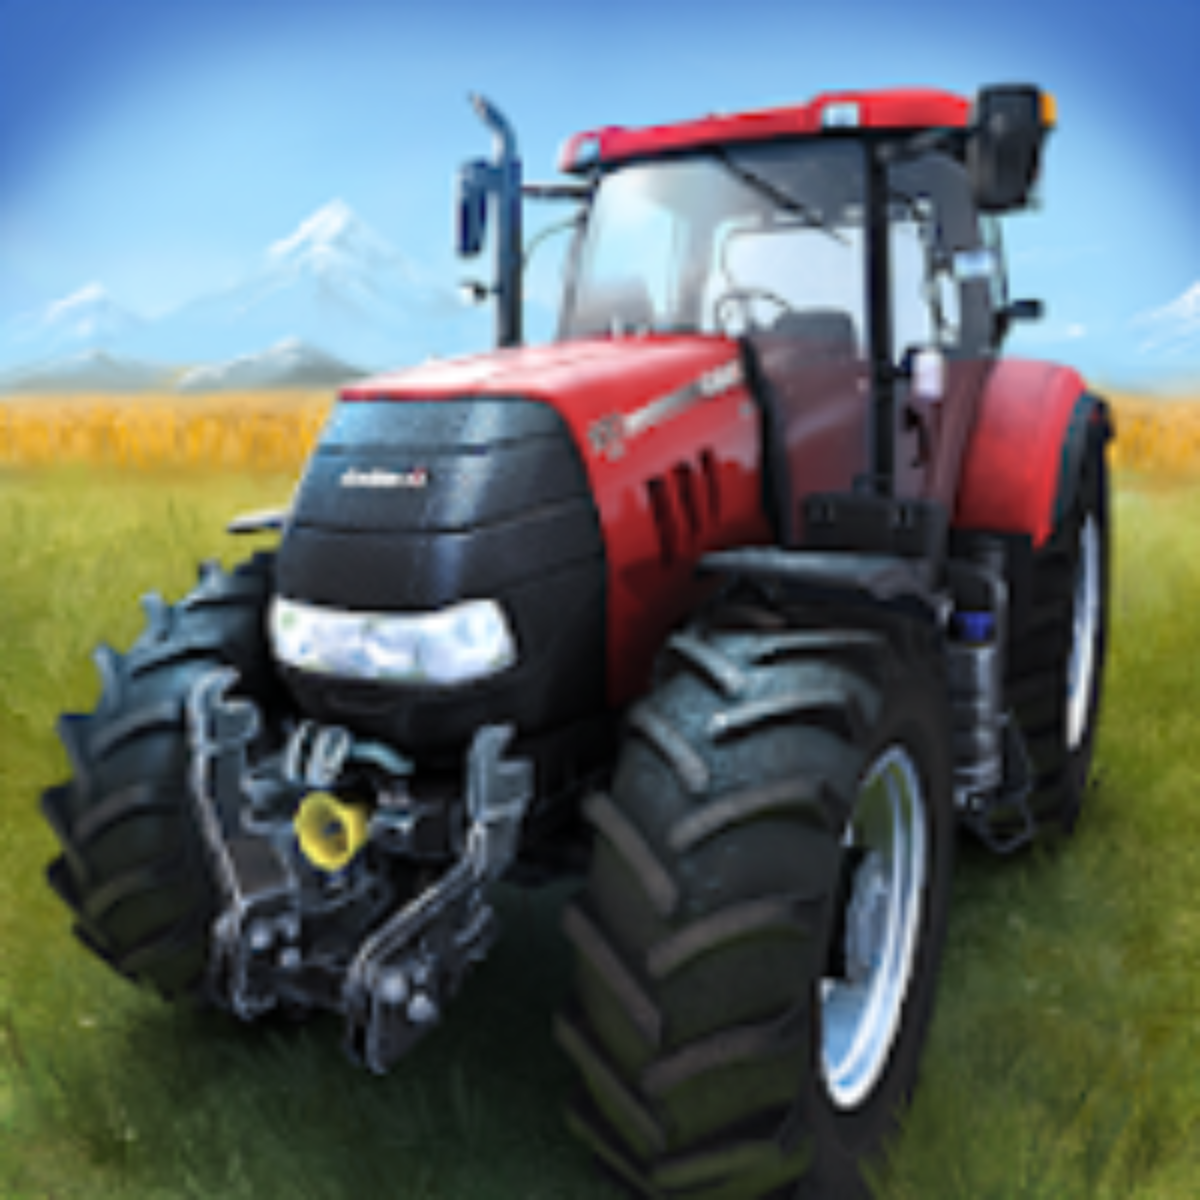 Farming Simulator 14 v1.4.8.1 Apk Mod [Dinheiro Infinito]